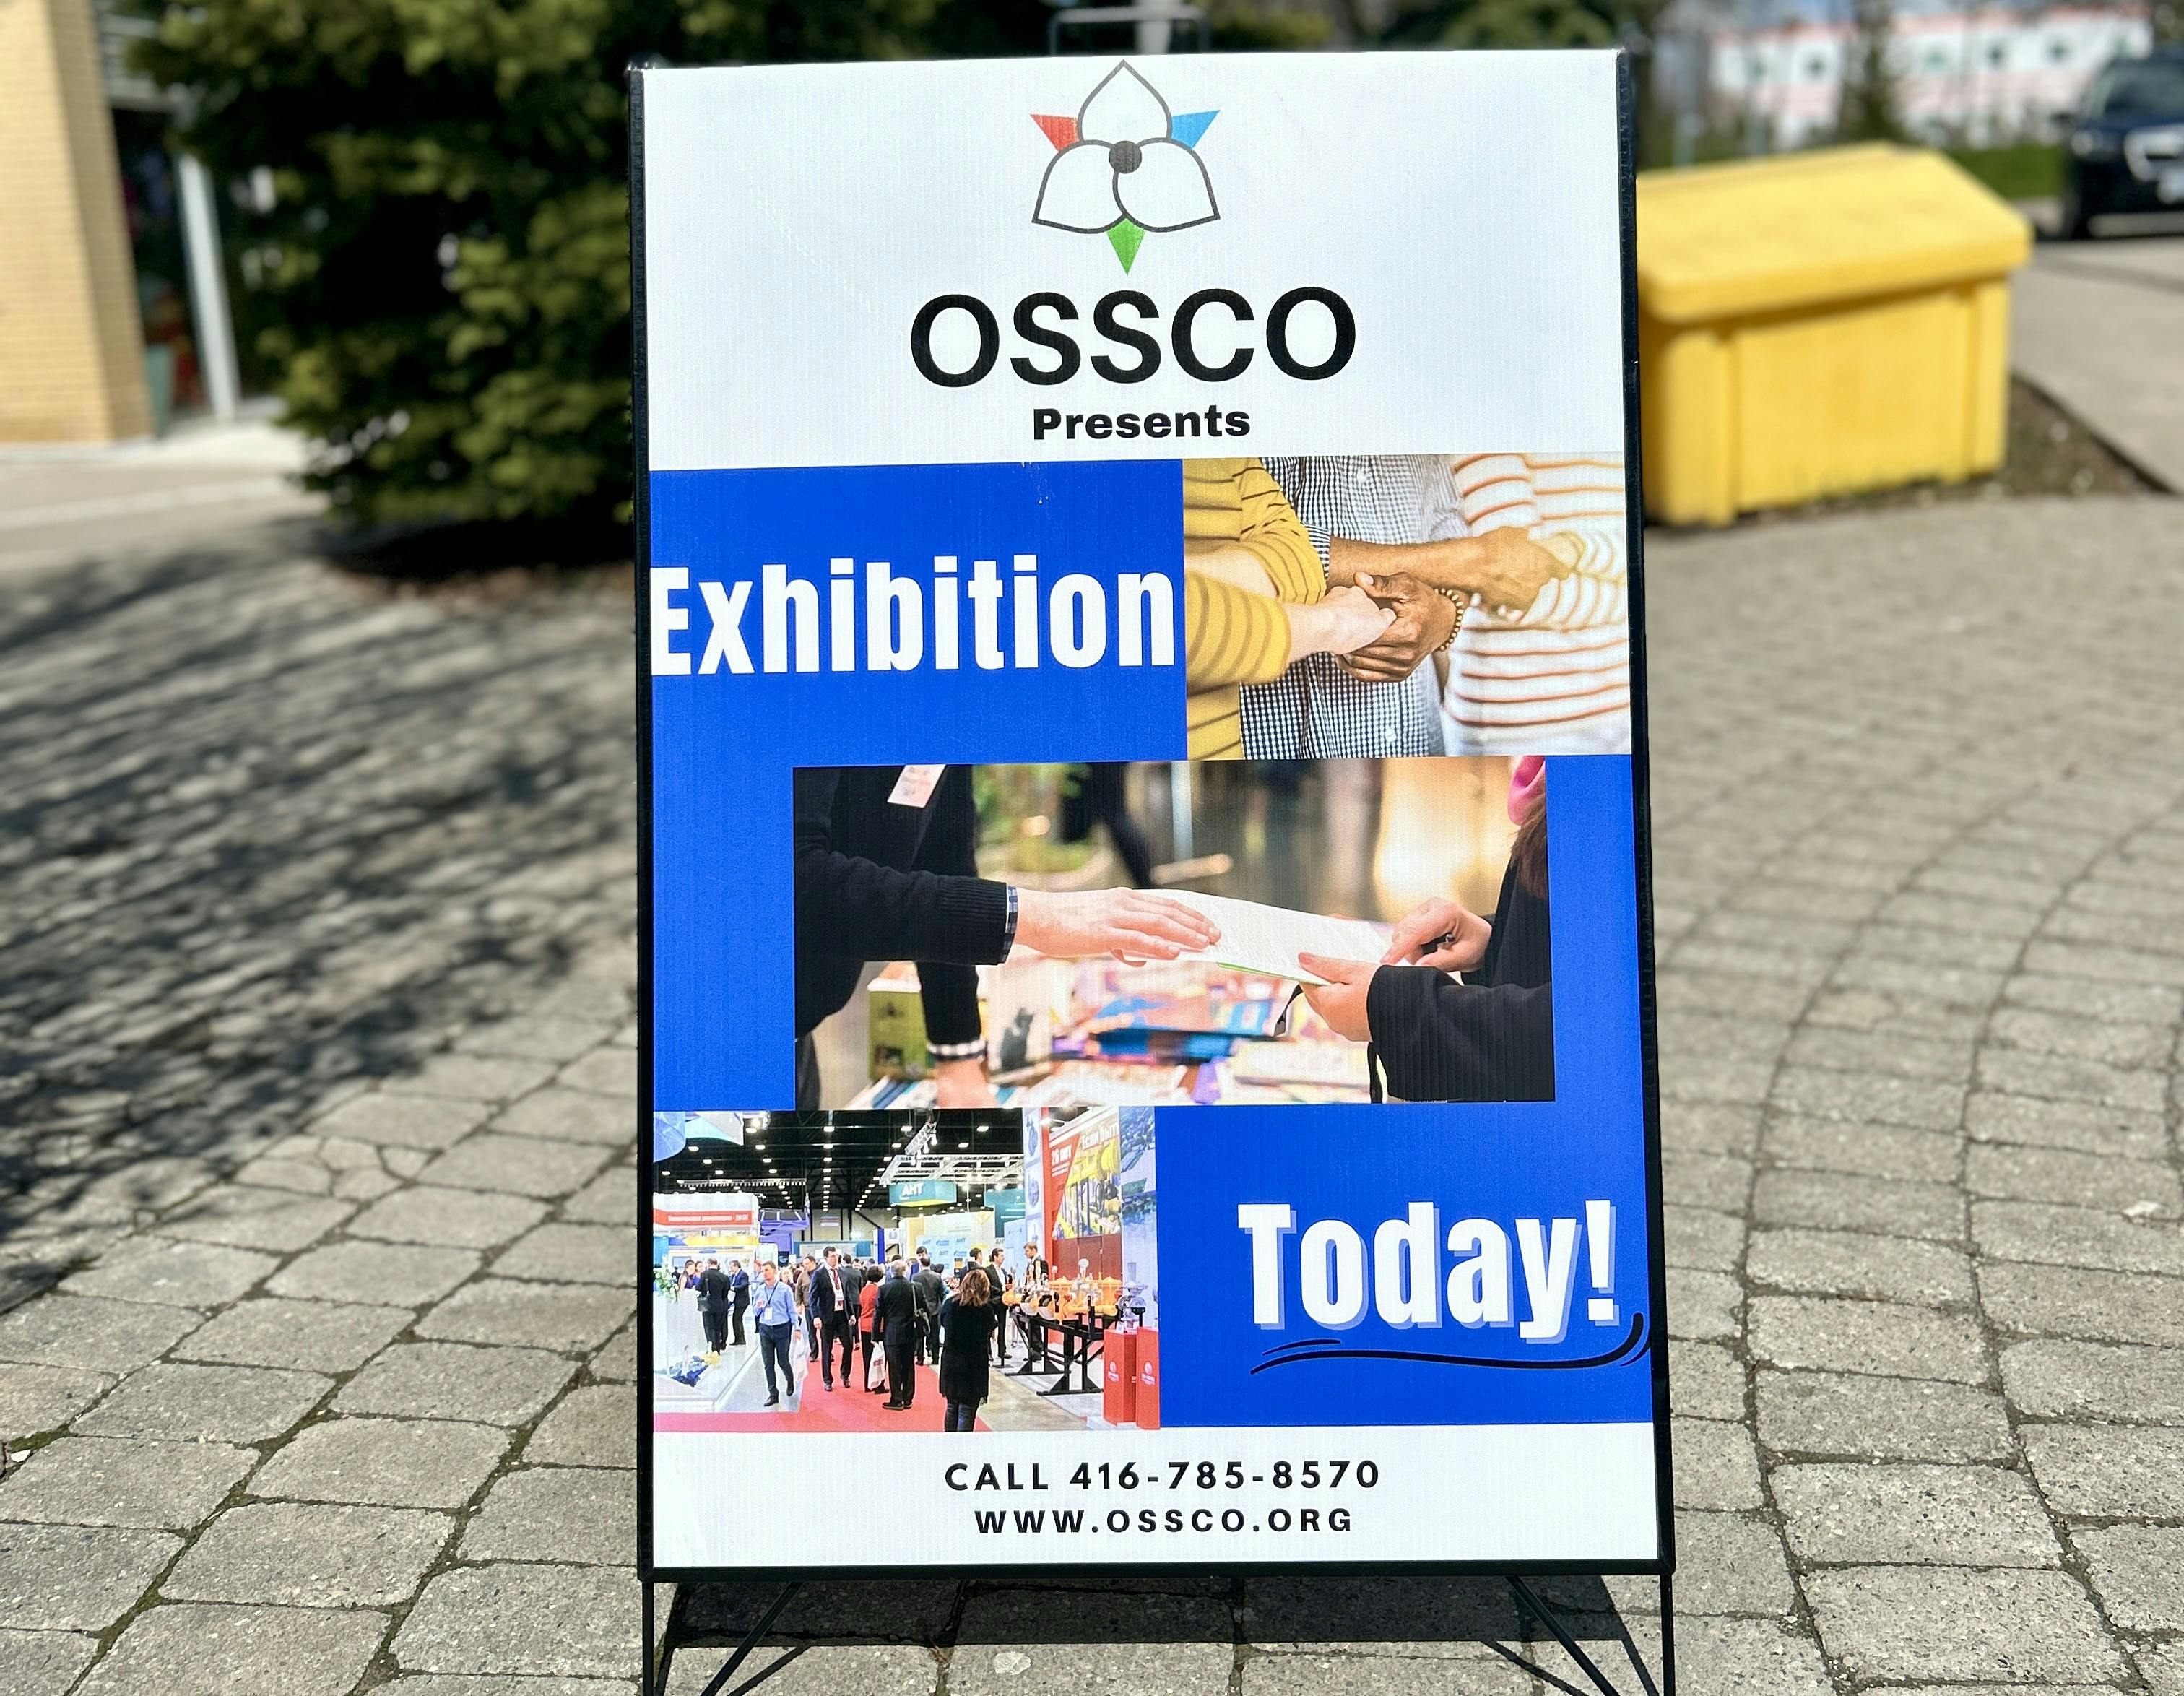 OSSCO 55+ Lifestyle & Learning Expo